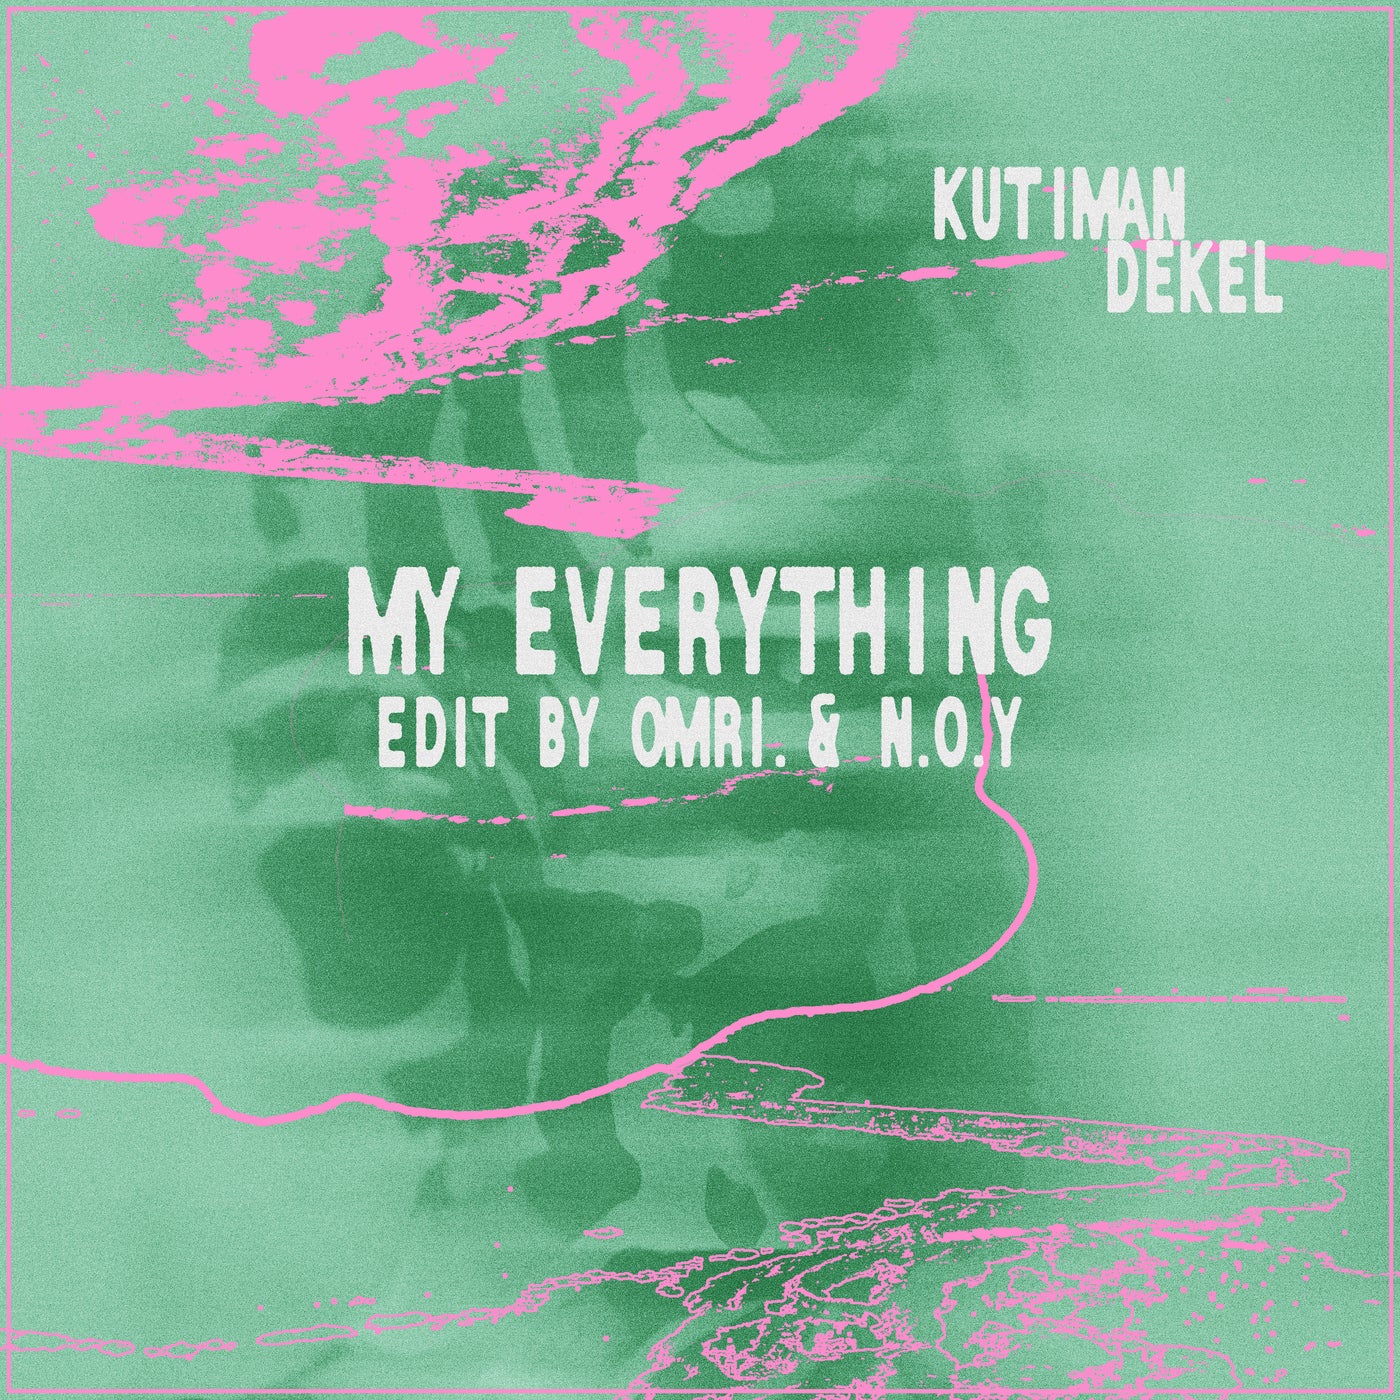 My Everything (feat. Dekel) [OMRI. & N.O.Y Edit]